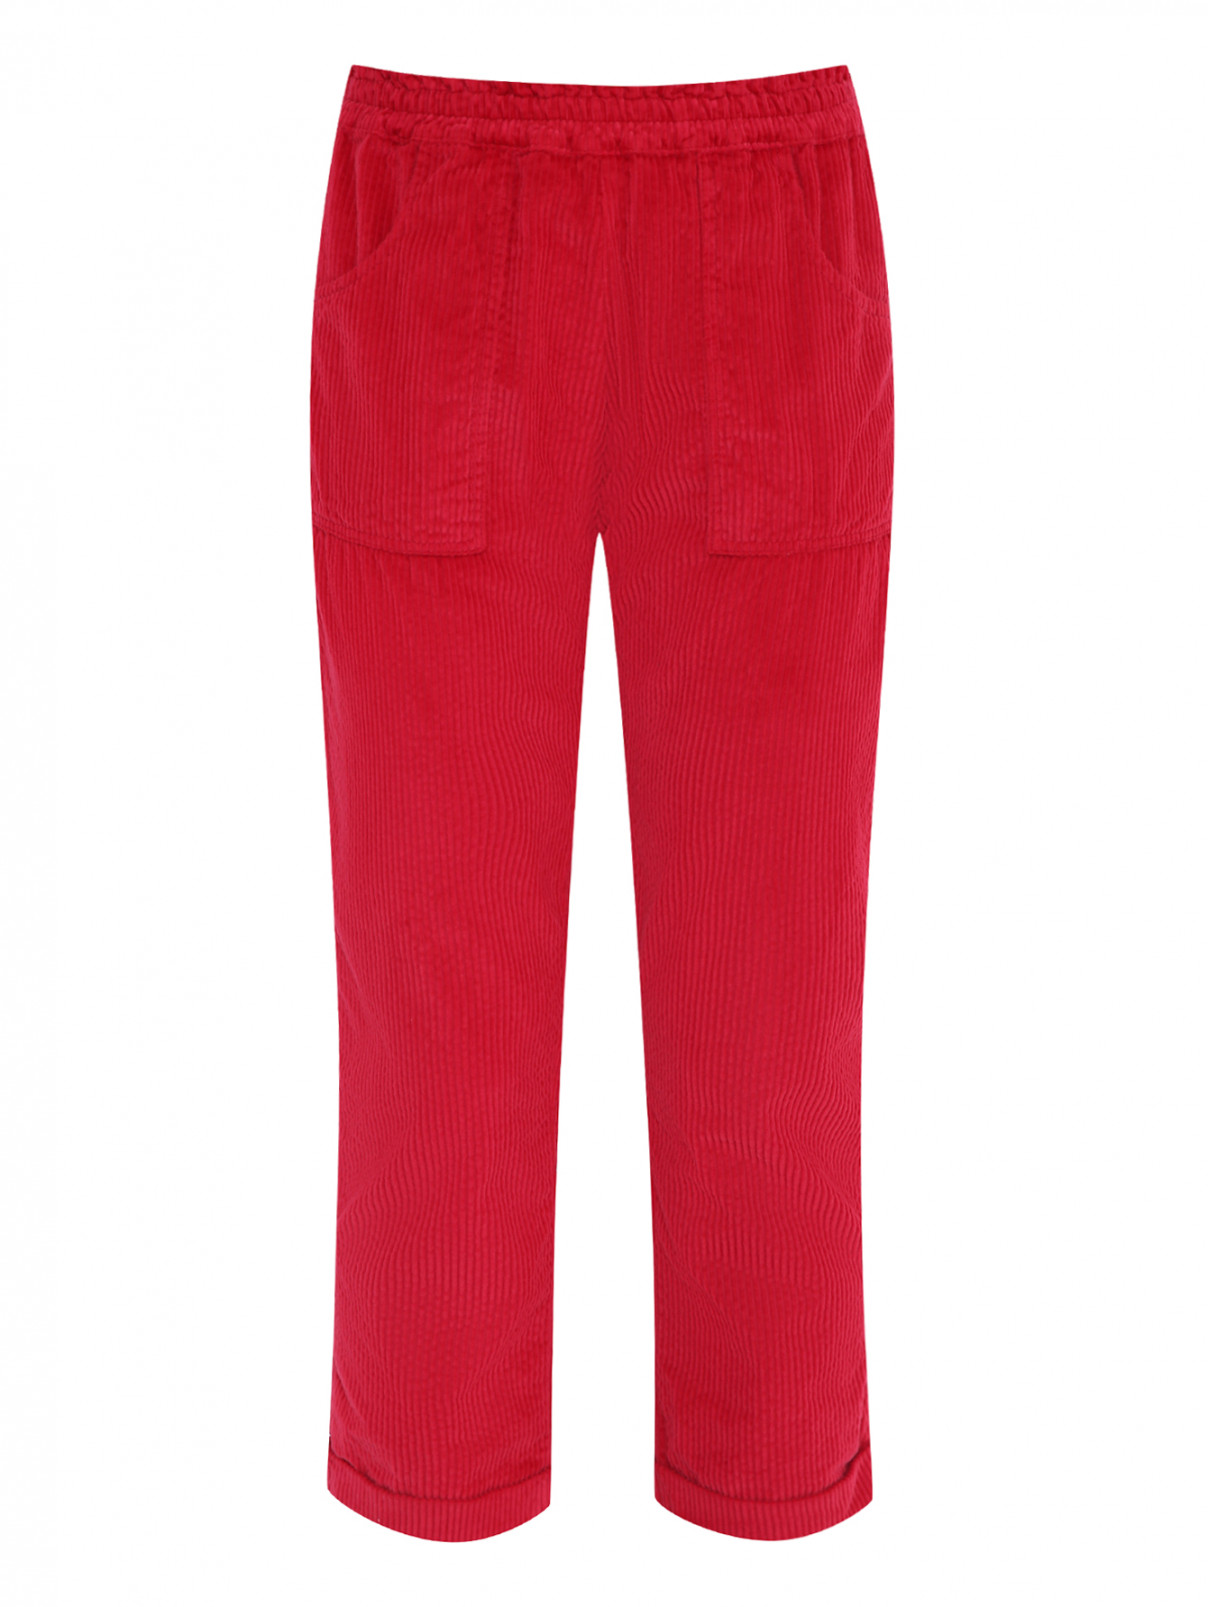 Укороченные вельветовые брюки с карманами Aletta  –  Общий вид  – Цвет:  Красный